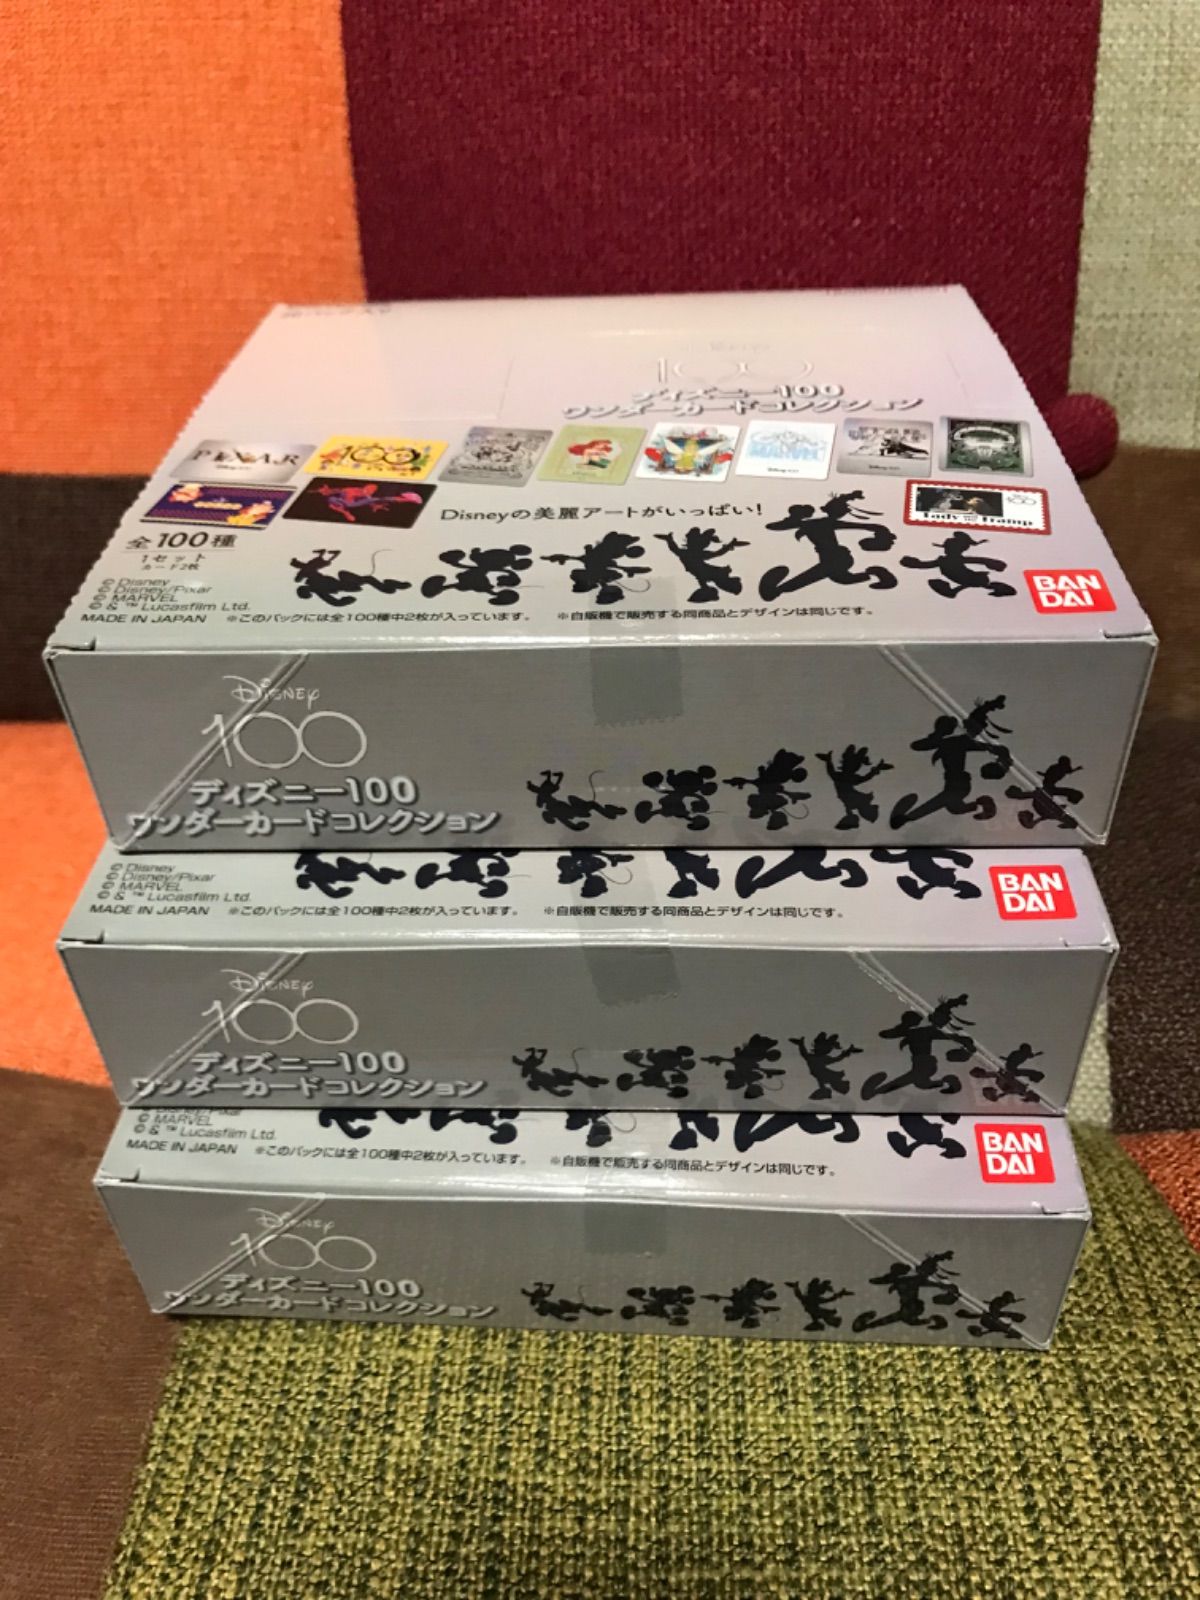 ディズニー100 ワンダーカードコレクション 3BOX - メルカリ